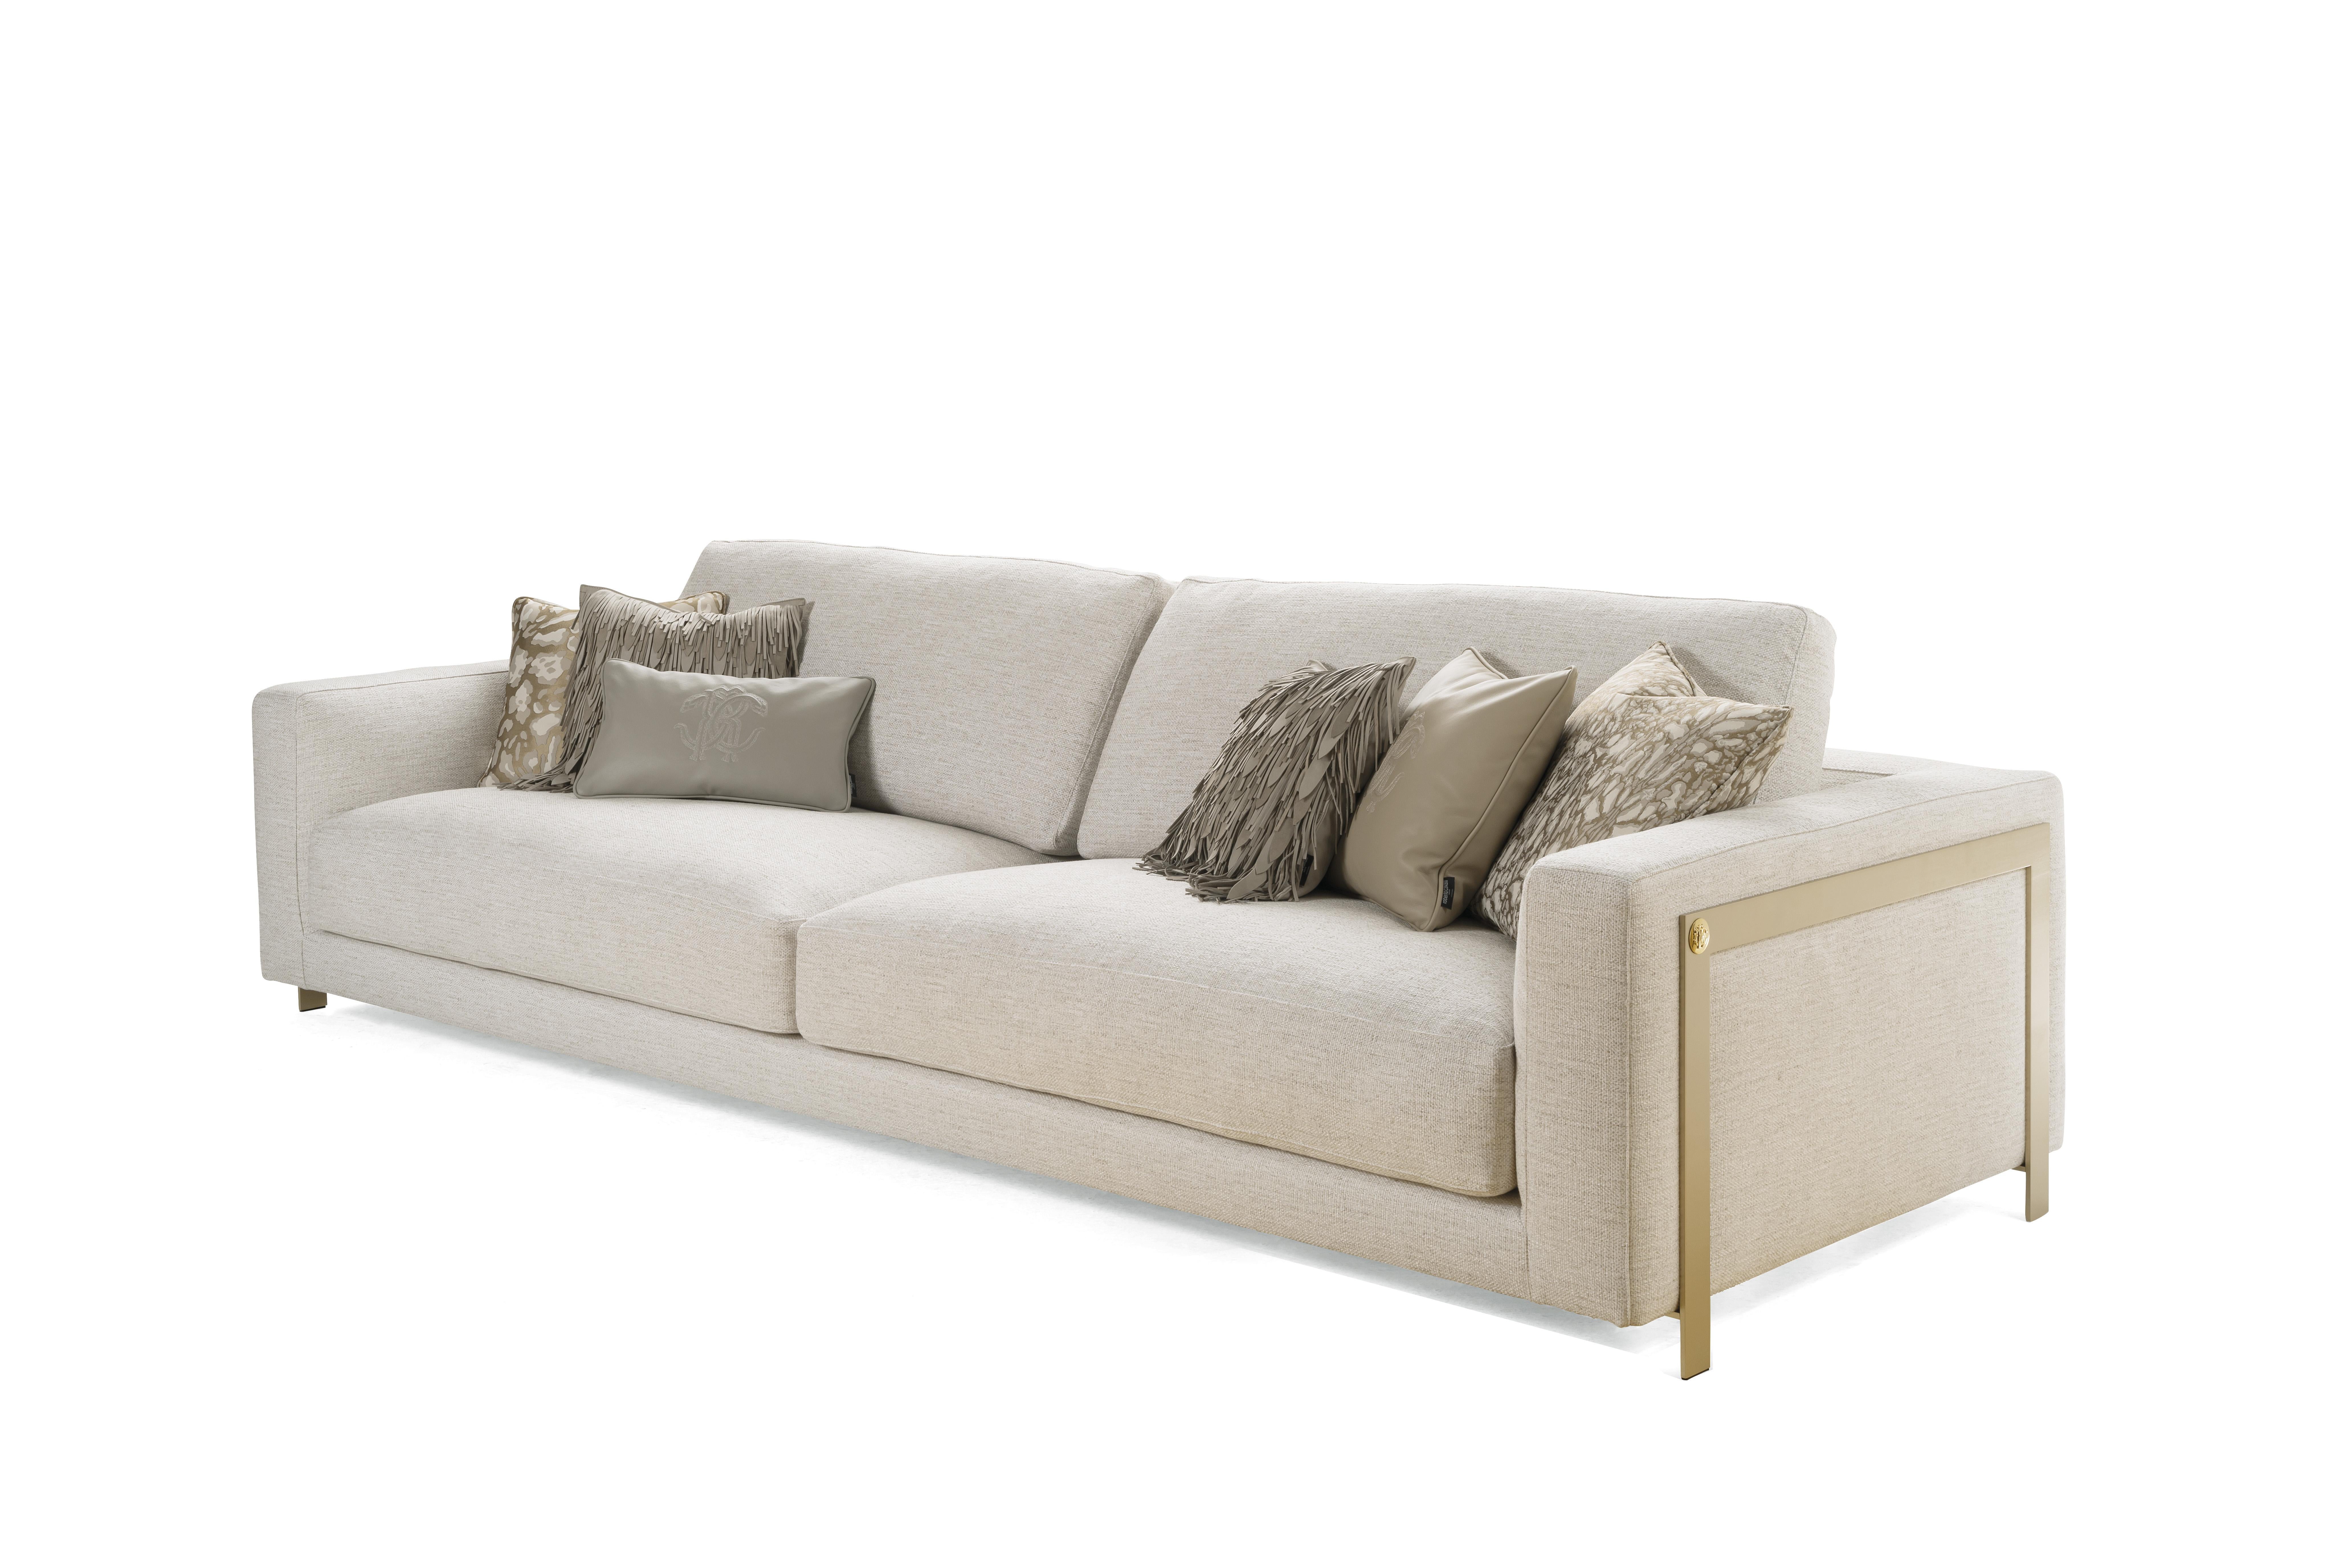 Ein Design-Sofa, das auf dünnen, goldfarbenen Beinen das behagliche Gefühl von einladender Wärme und komfortabler Weichheit vermittelt, die sich vom Boden abhebt.
Manhattan 3-Sitzer-Sofa mit Struktur aus massivem Pappelholz und großflächigem